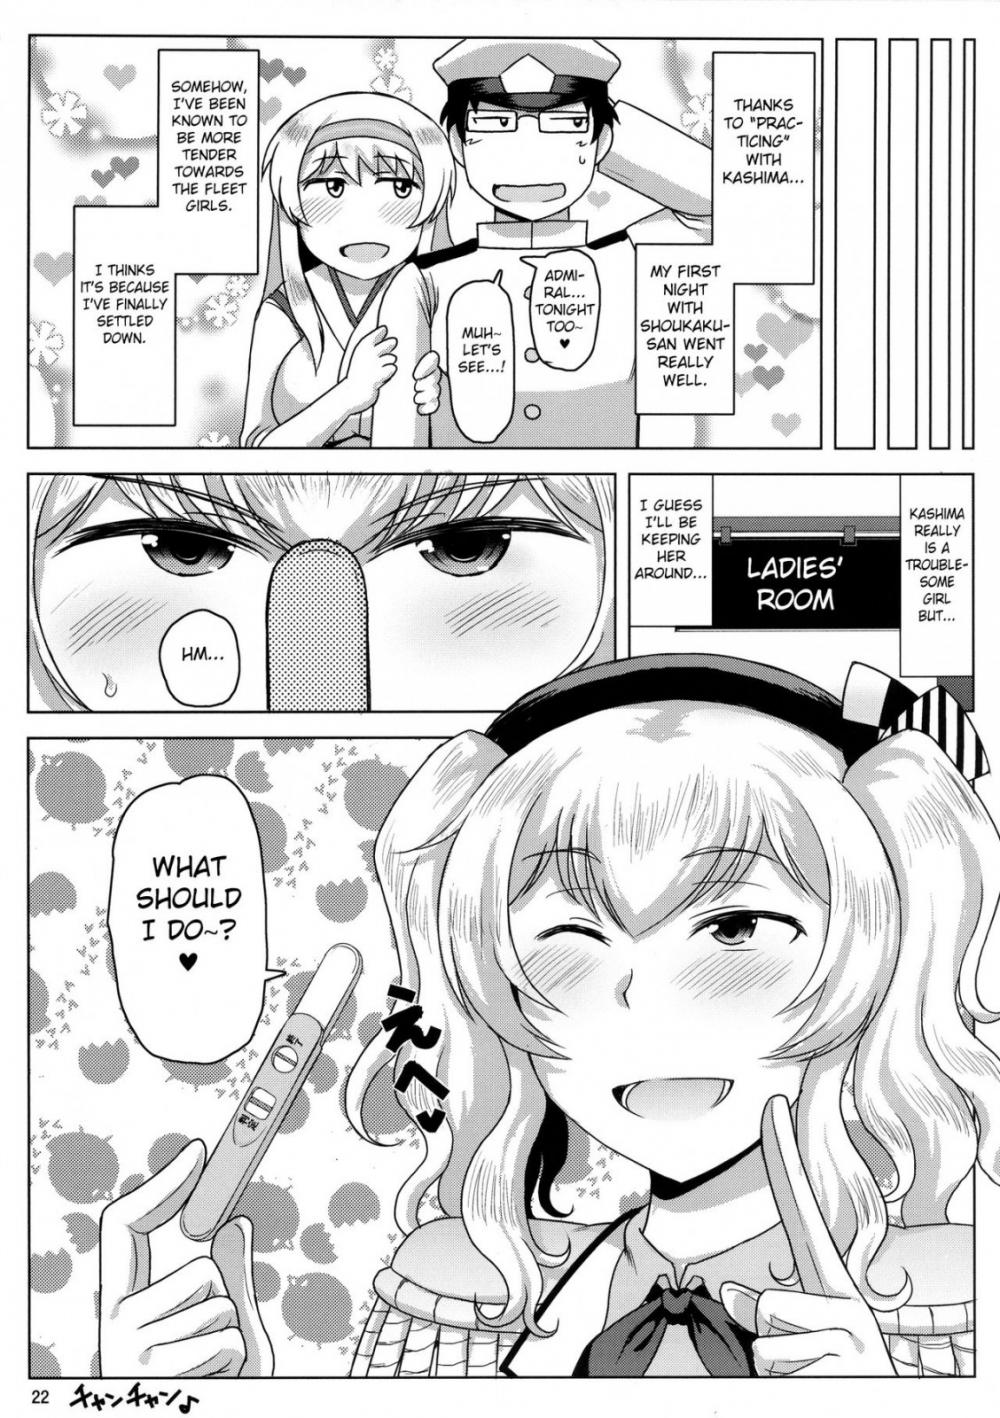 Hentai Manga Comic-A Story About Kashima Being A Lewd Bitch-Read-23